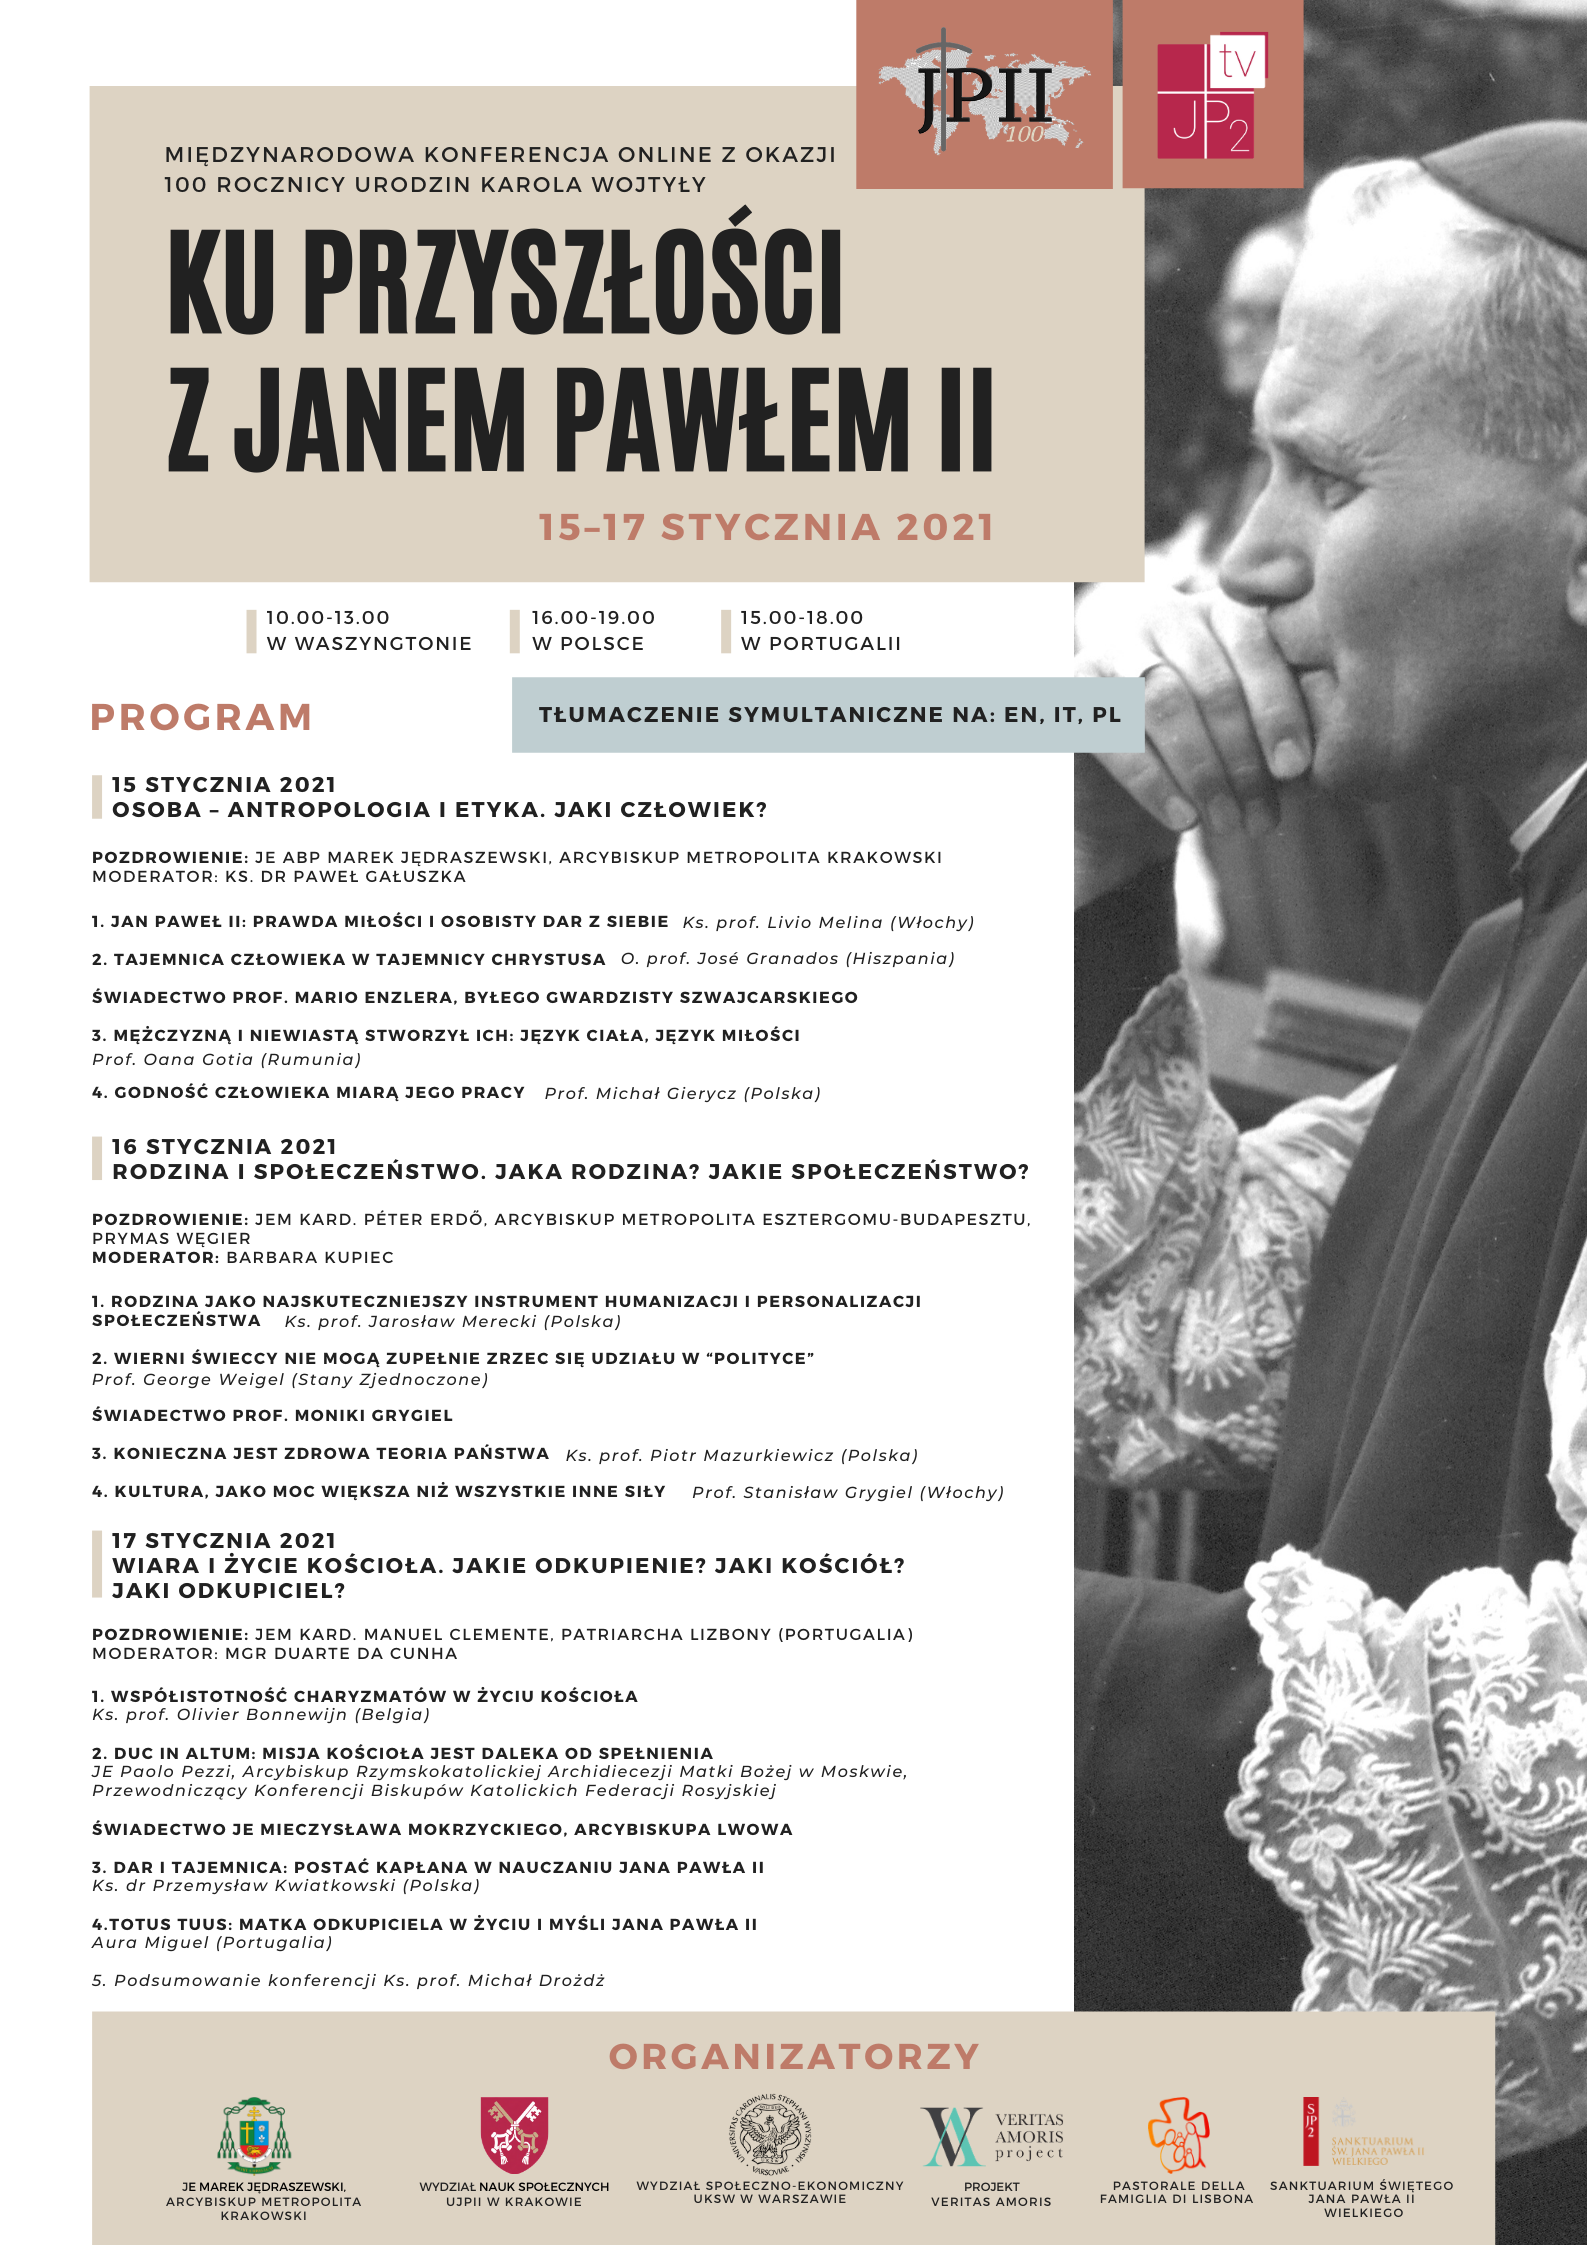 1. Dzień Międzynarodowej Konferencji z okazji 100. rocznicy urodzin Karola Wojtyły “Ku przyszłości z Janem Pawłem II”